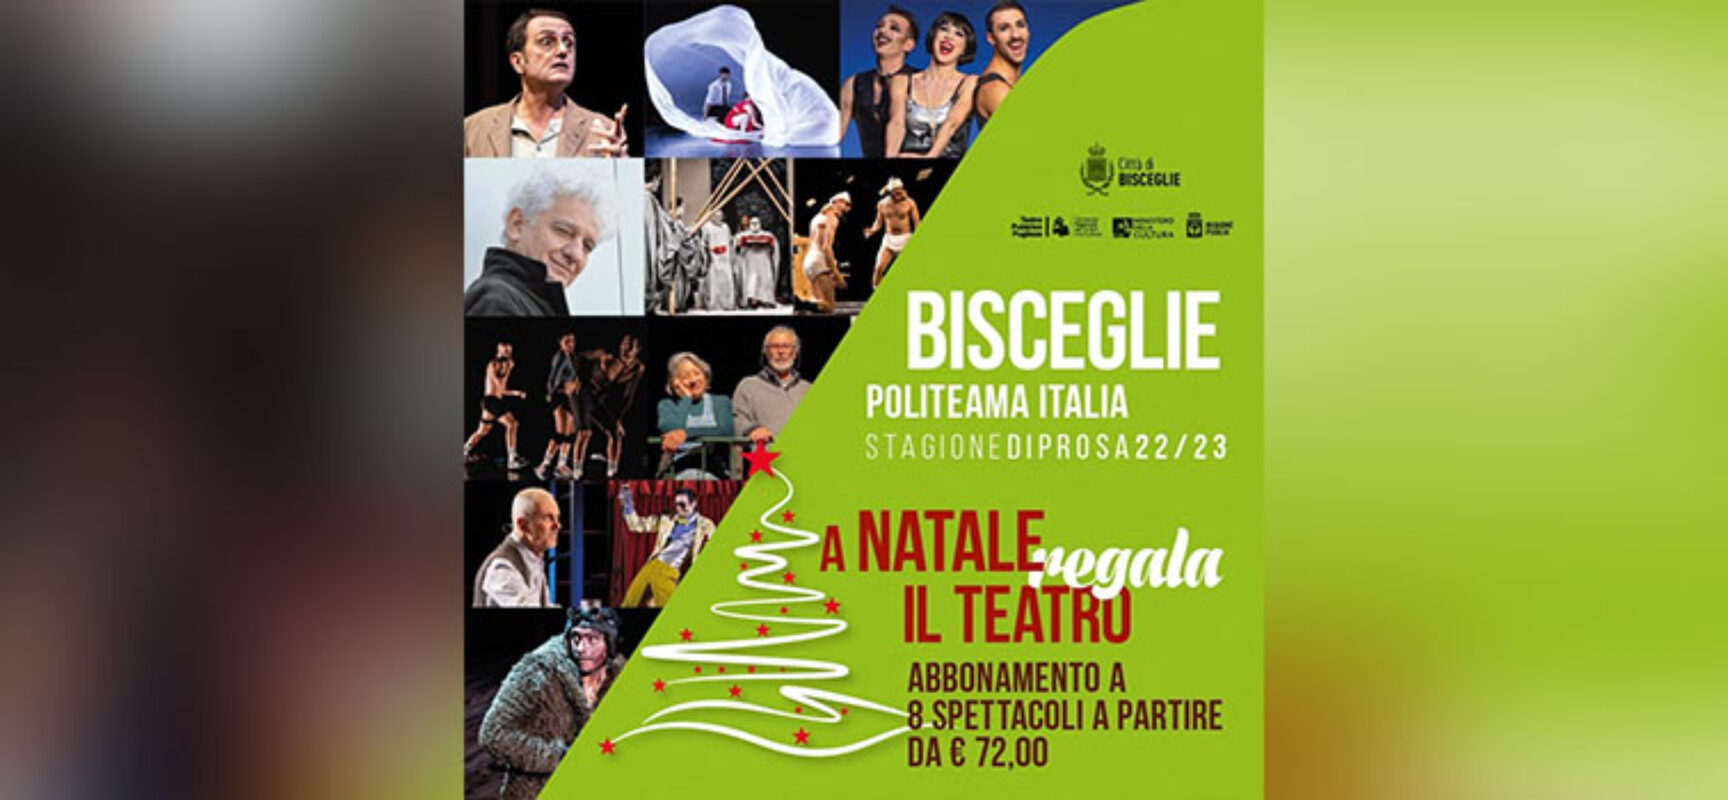 “A Natale regala il teatro”, abbonamento speciale per stagione teatrale a Bisceglie